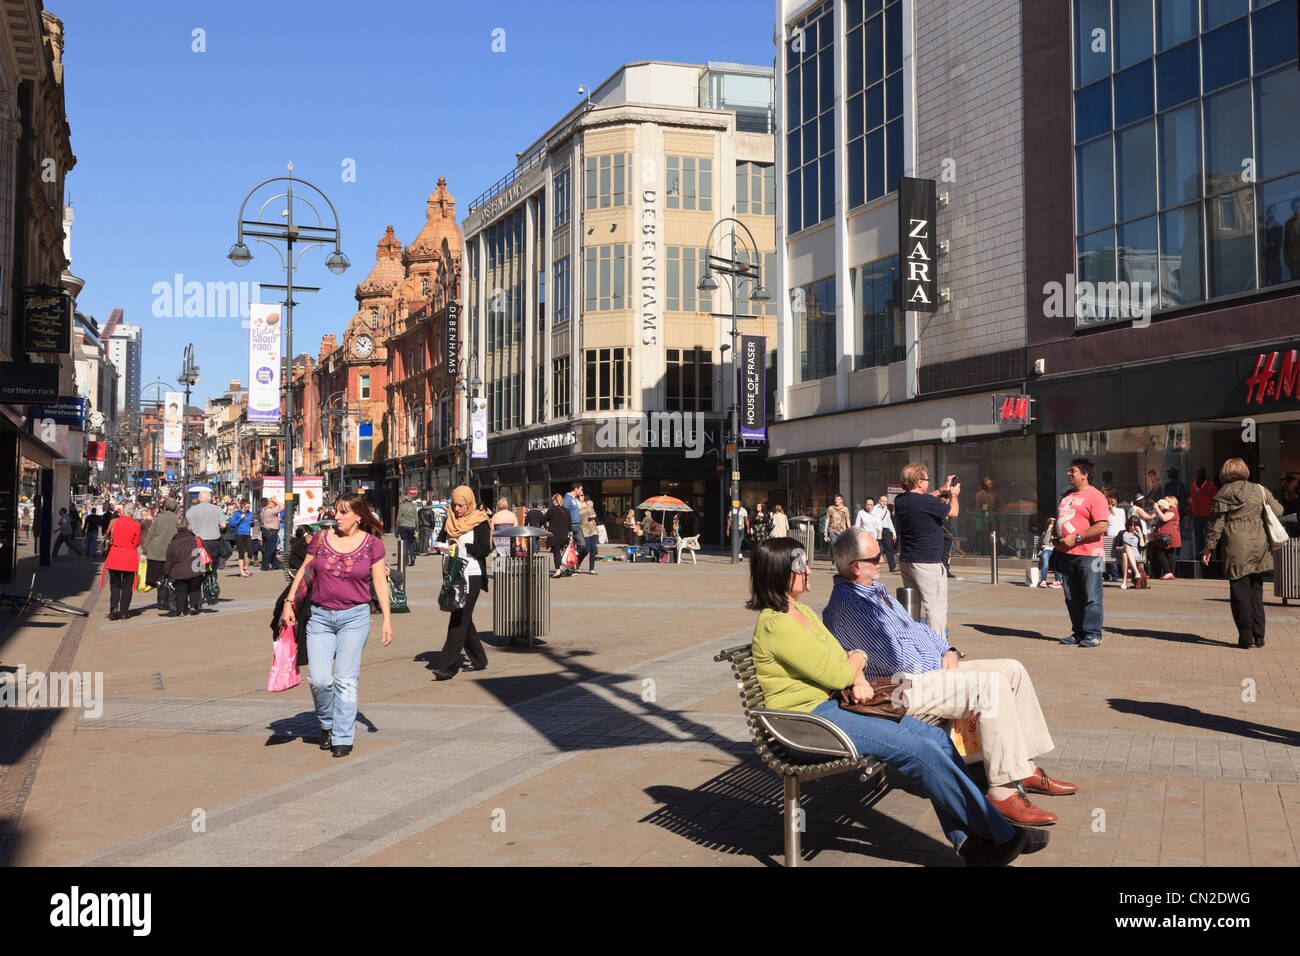 Piétonne animée rue principale scène avec personnes shopping dans le centre-ville sur Briggate, Leeds, West Yorkshire, England, UK, Grande-Bretagne Banque D'Images